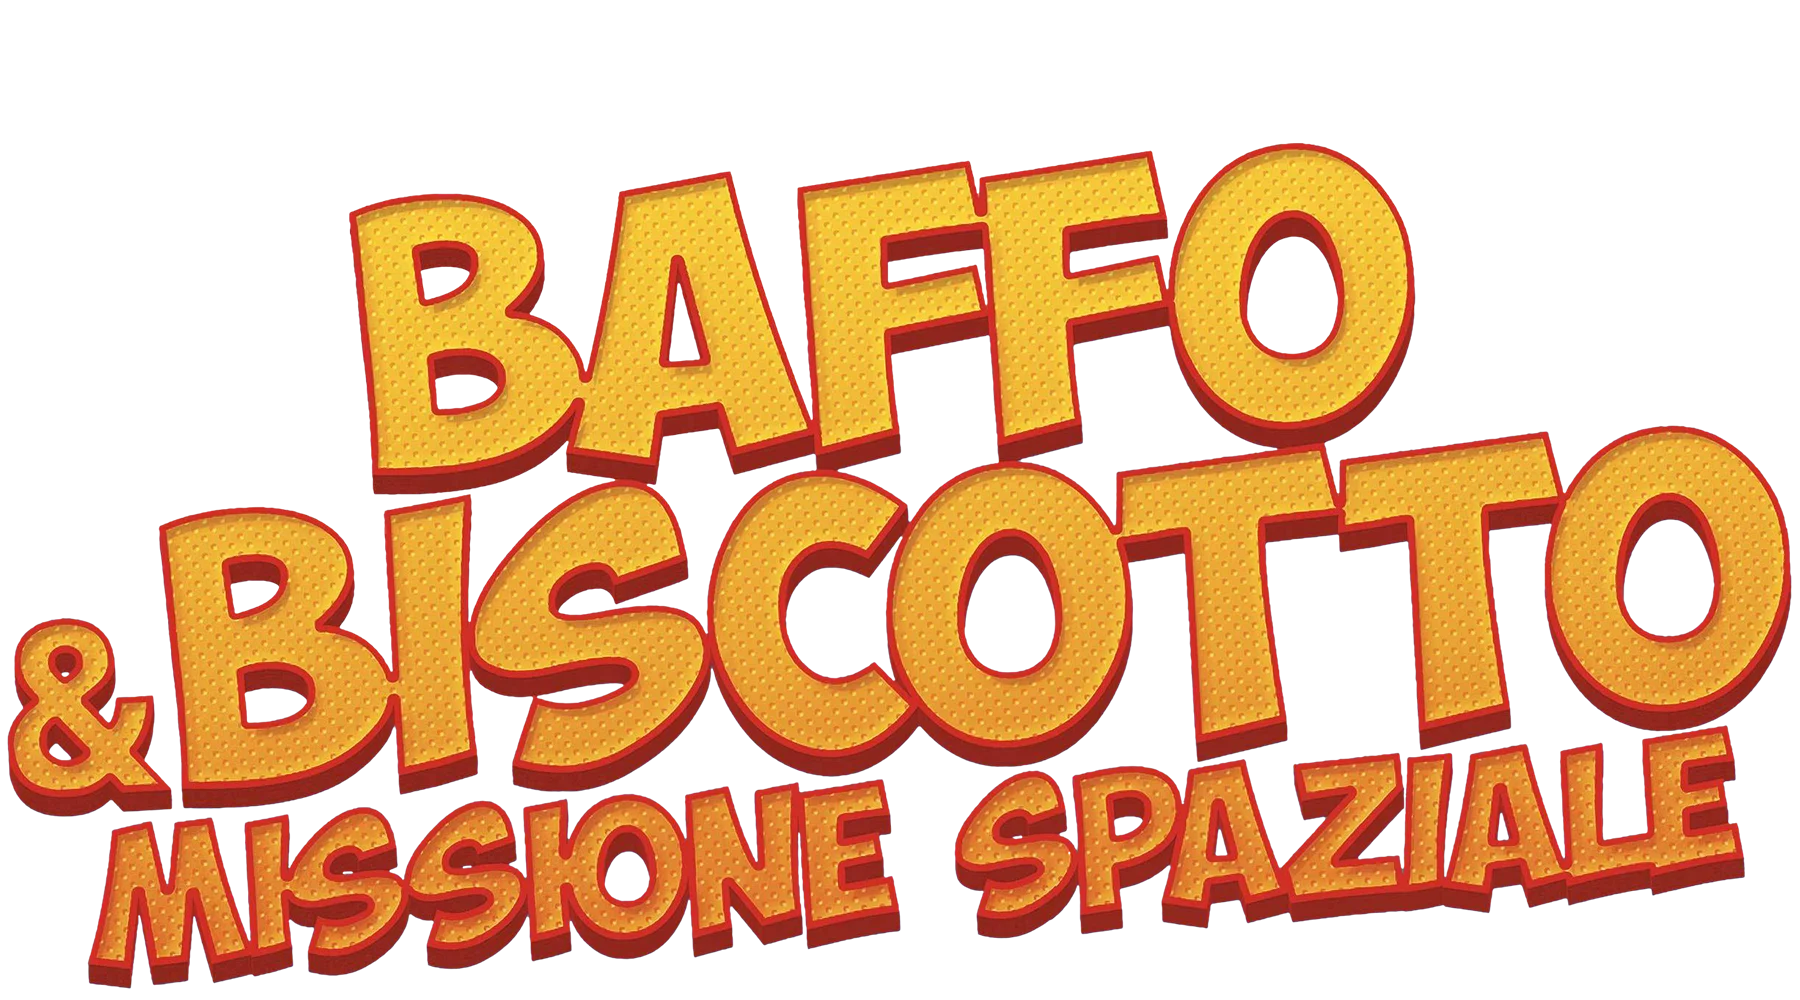 Baffo & Biscotto - Missione spaziale